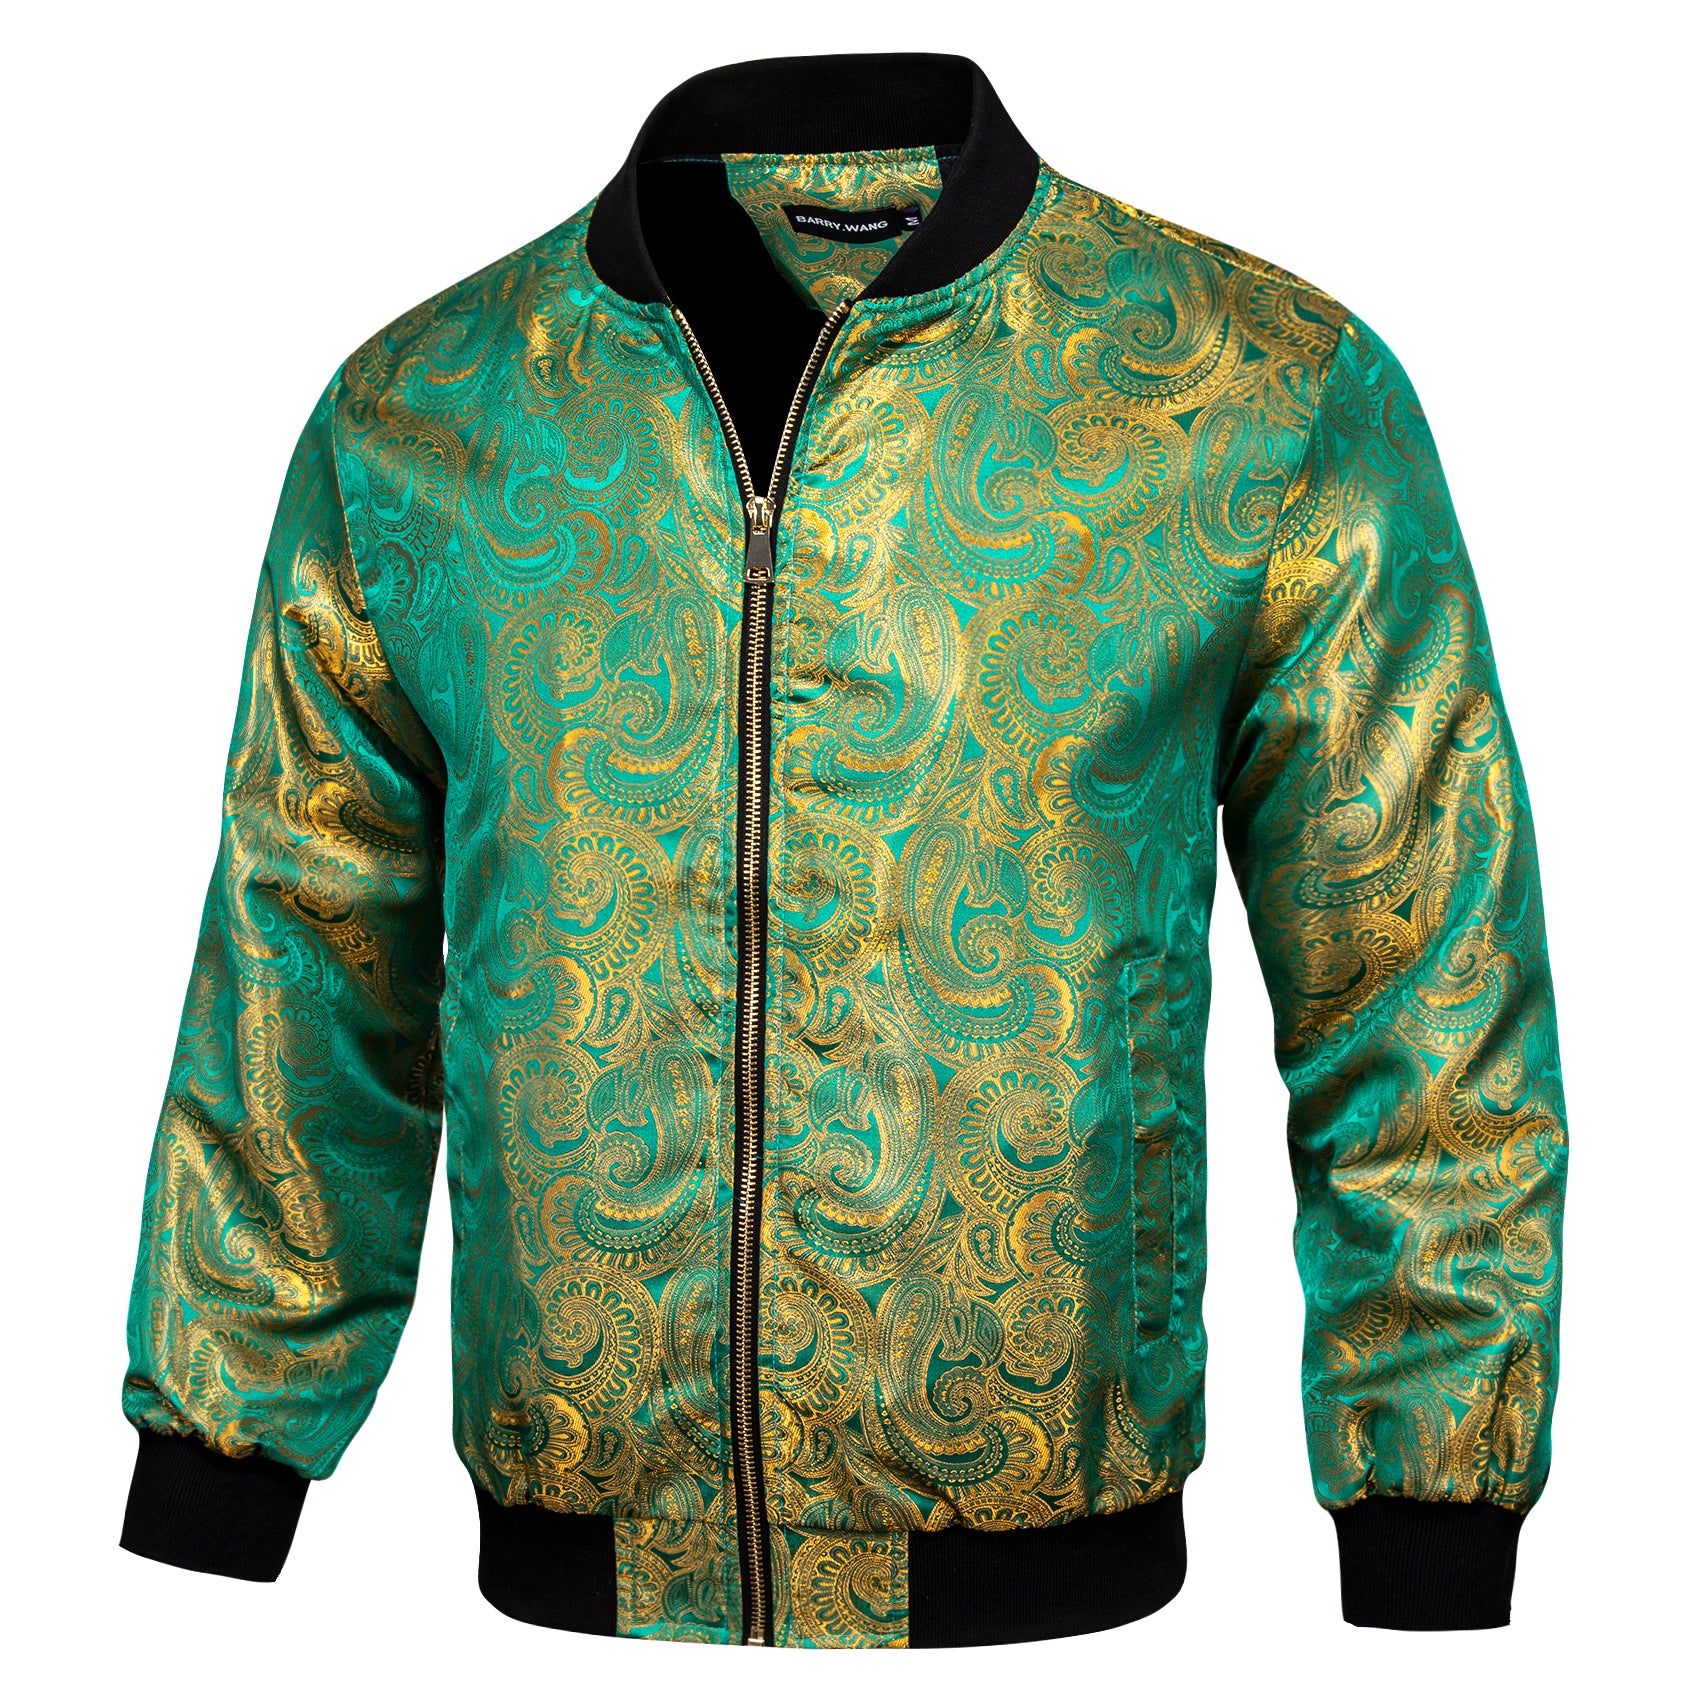 Mens Green Gold Floral Jacquard Paisley Jacket